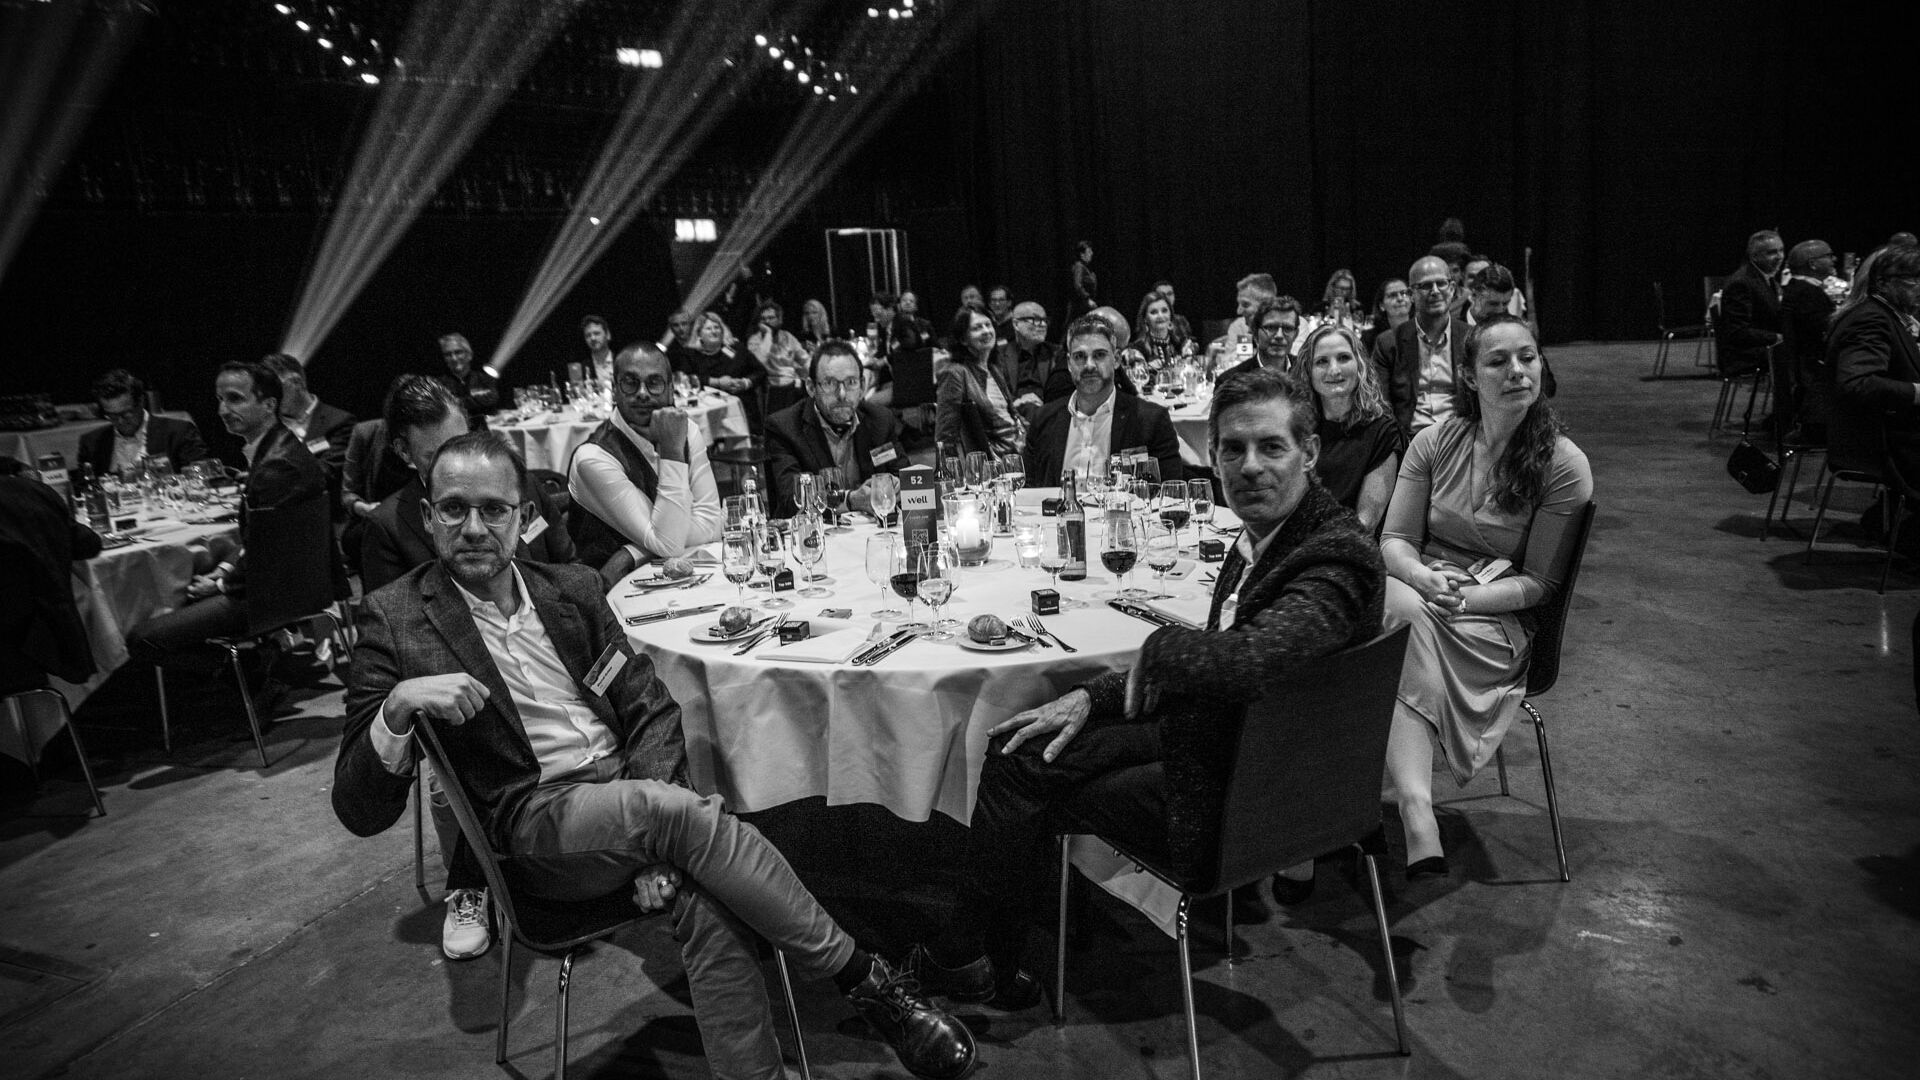 Digital Economy Award: фотогалерея церемонії нагородження на Hallenstadion у Цюріху, Швейцарія, 16 листопада 2023 року